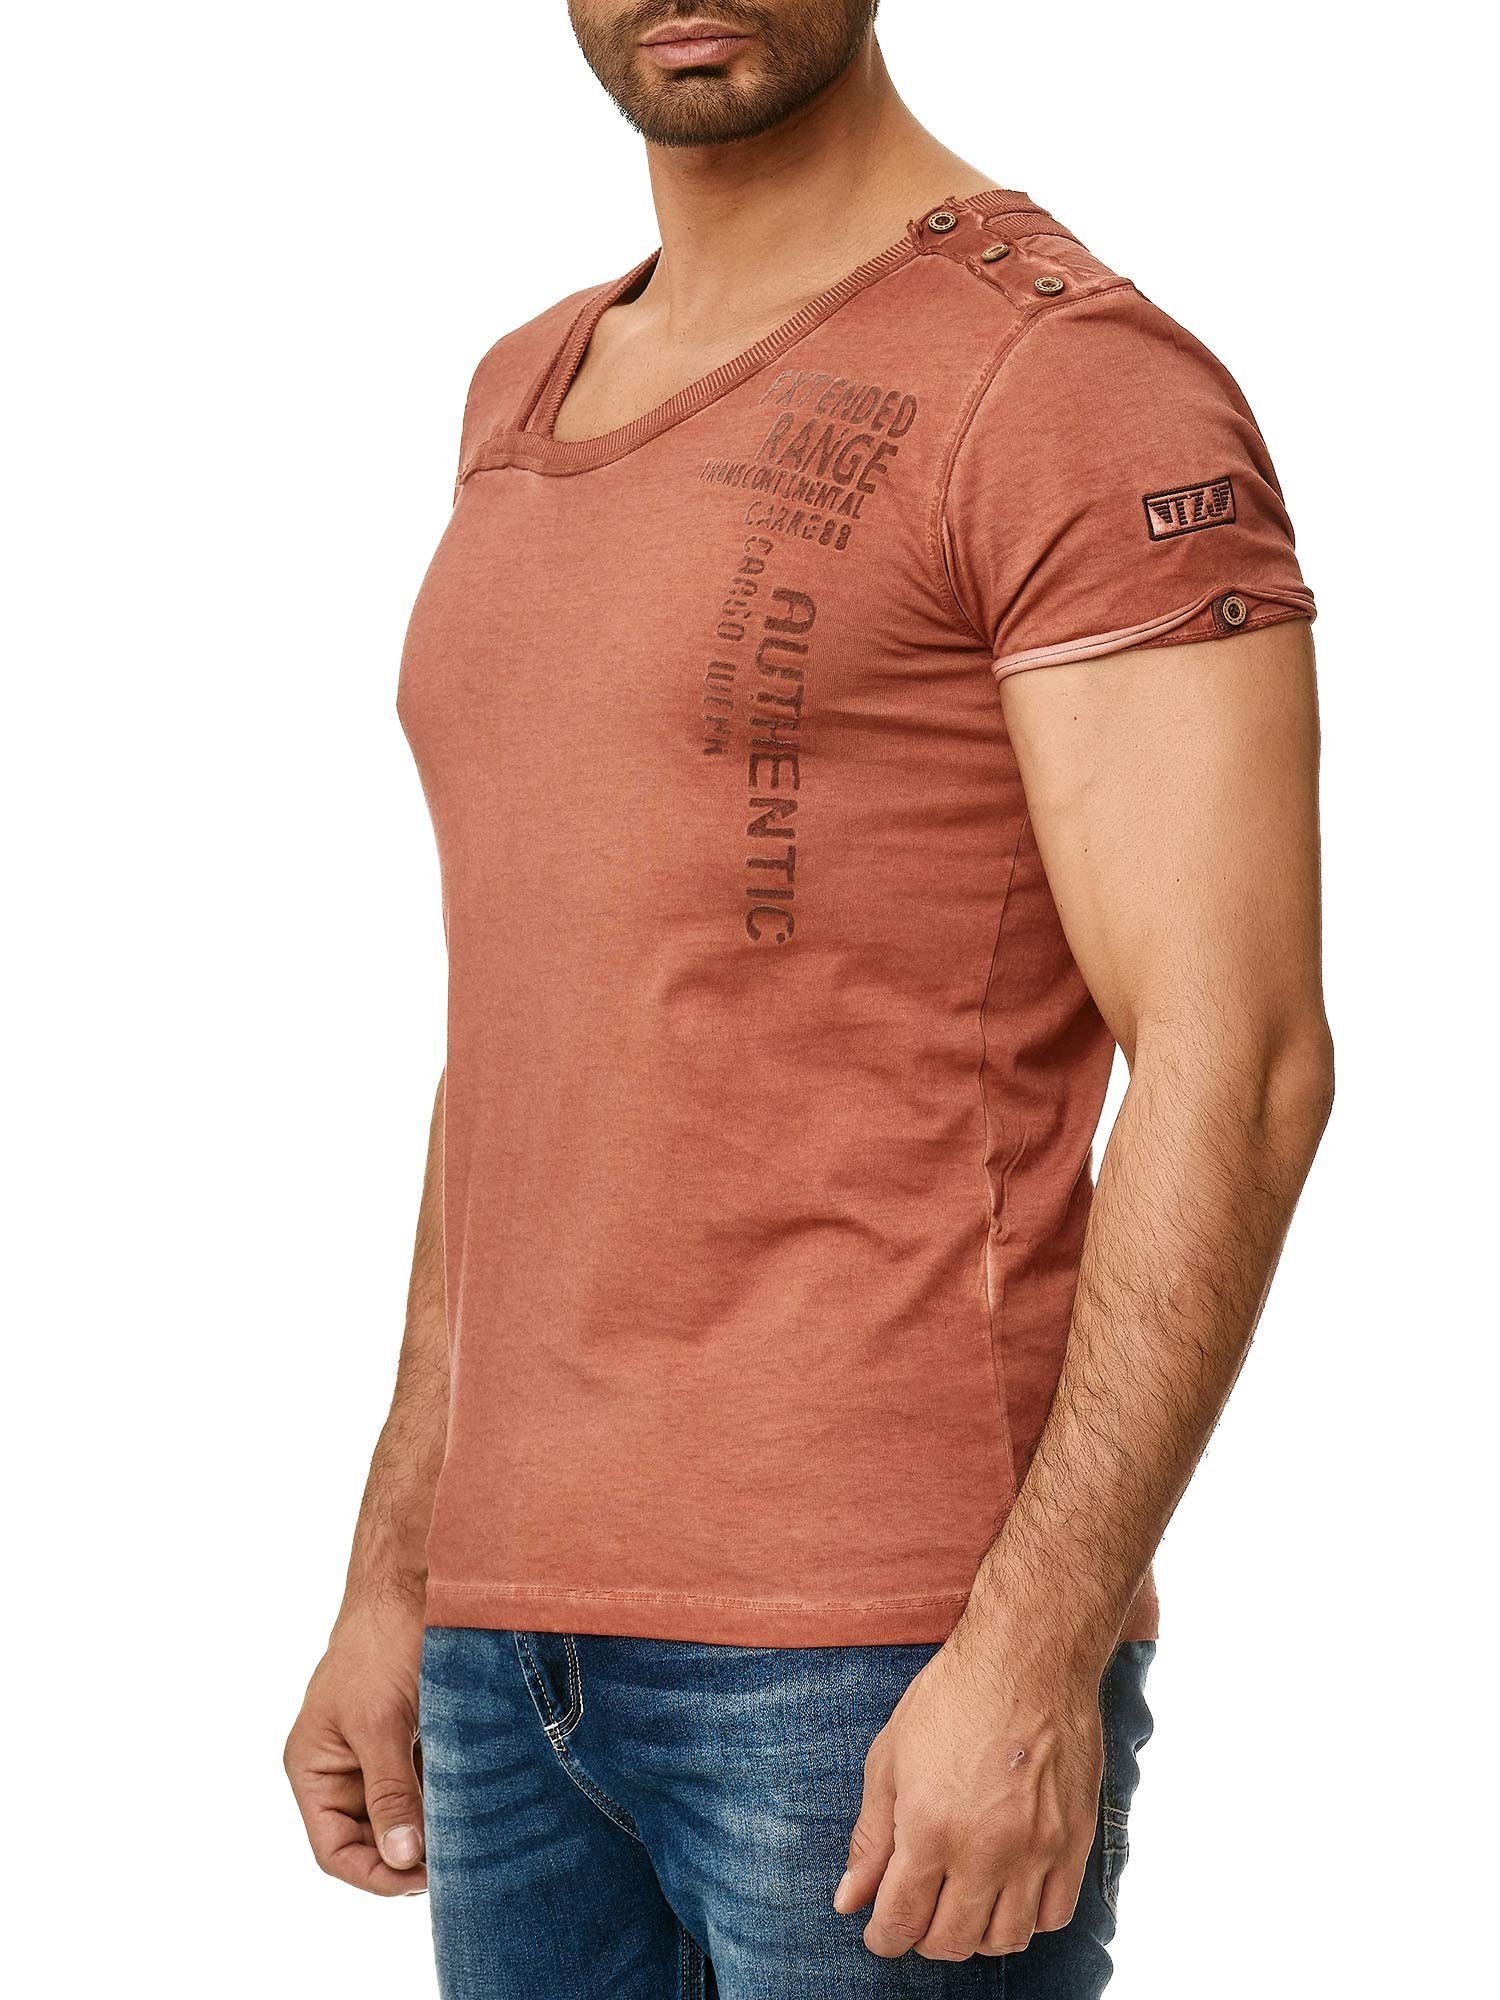 und mit bordeaux Schulter Kragen Knopfleiste T-Shirt stylischem Ölwaschung in Tazzio 4022 an der trendiger